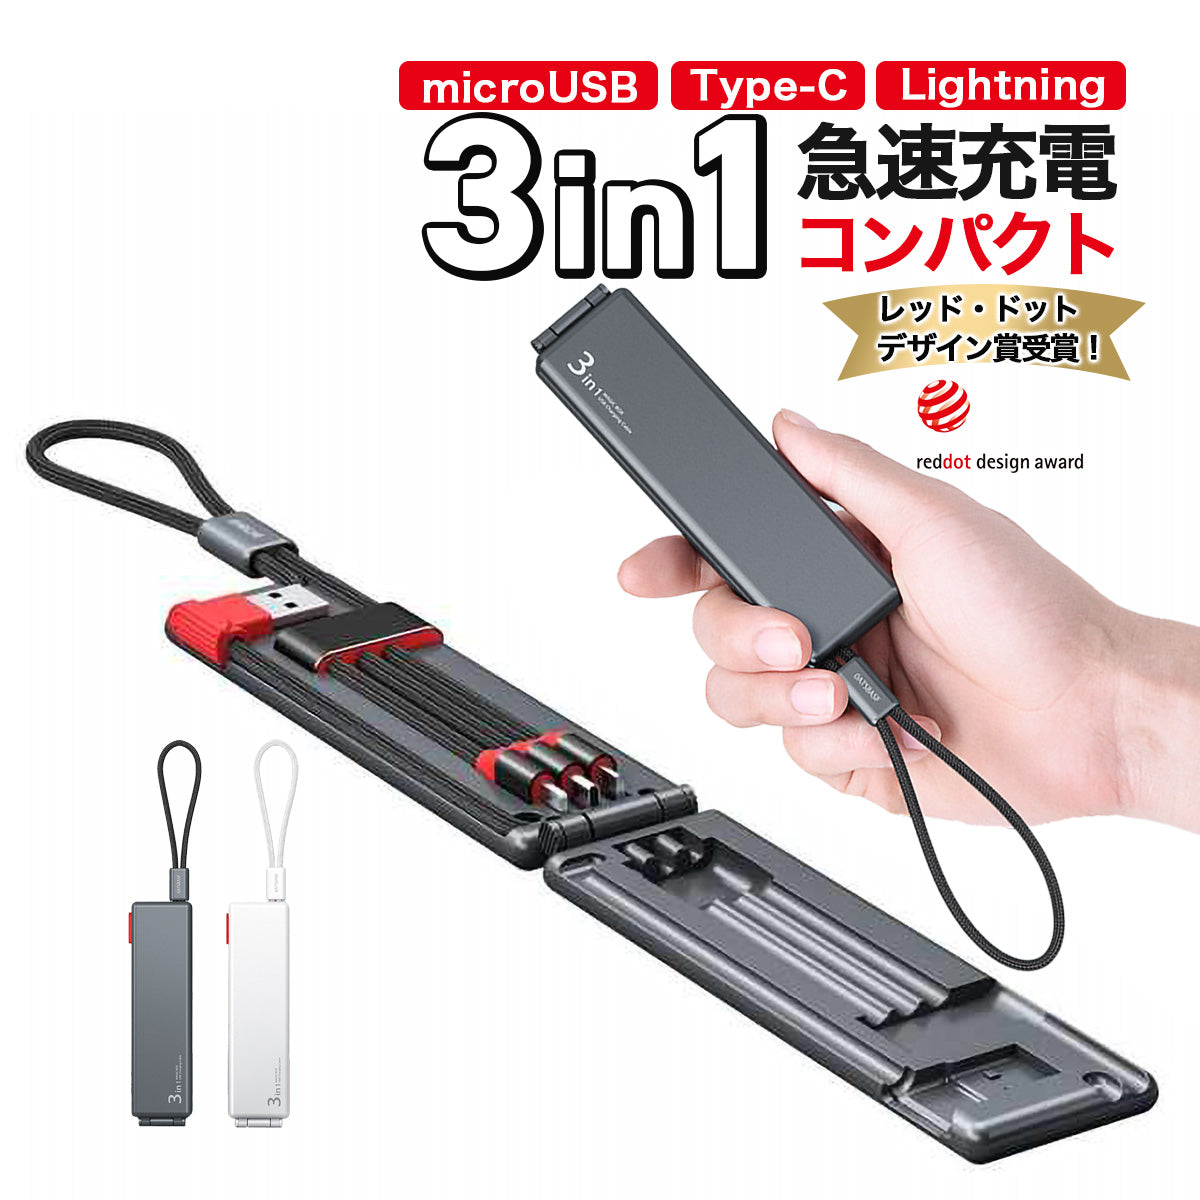 3in1 USB 充電ケーブル 携帯用 コンパクト 持ち運びに持ち運びに便利